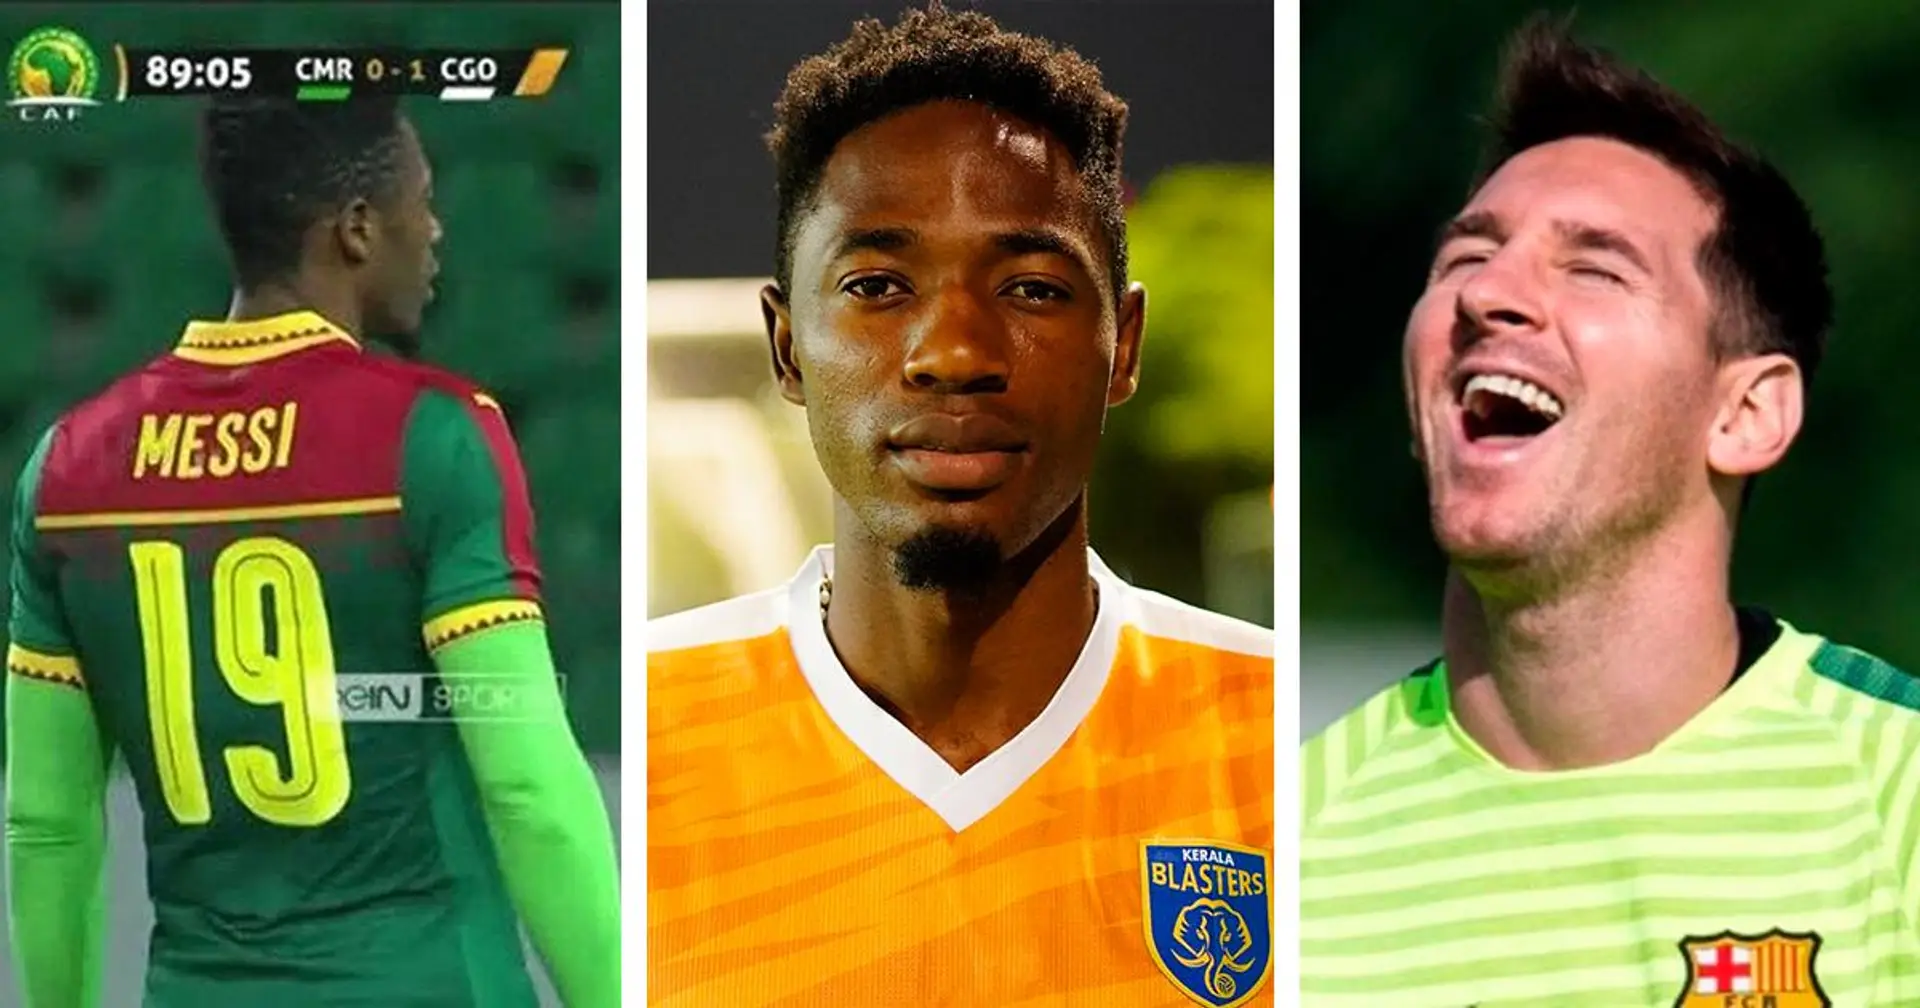 "Ils attendent toujours plus de moi!'': L'histoire hilarante de l'attaquant camerounais Raphael Messi